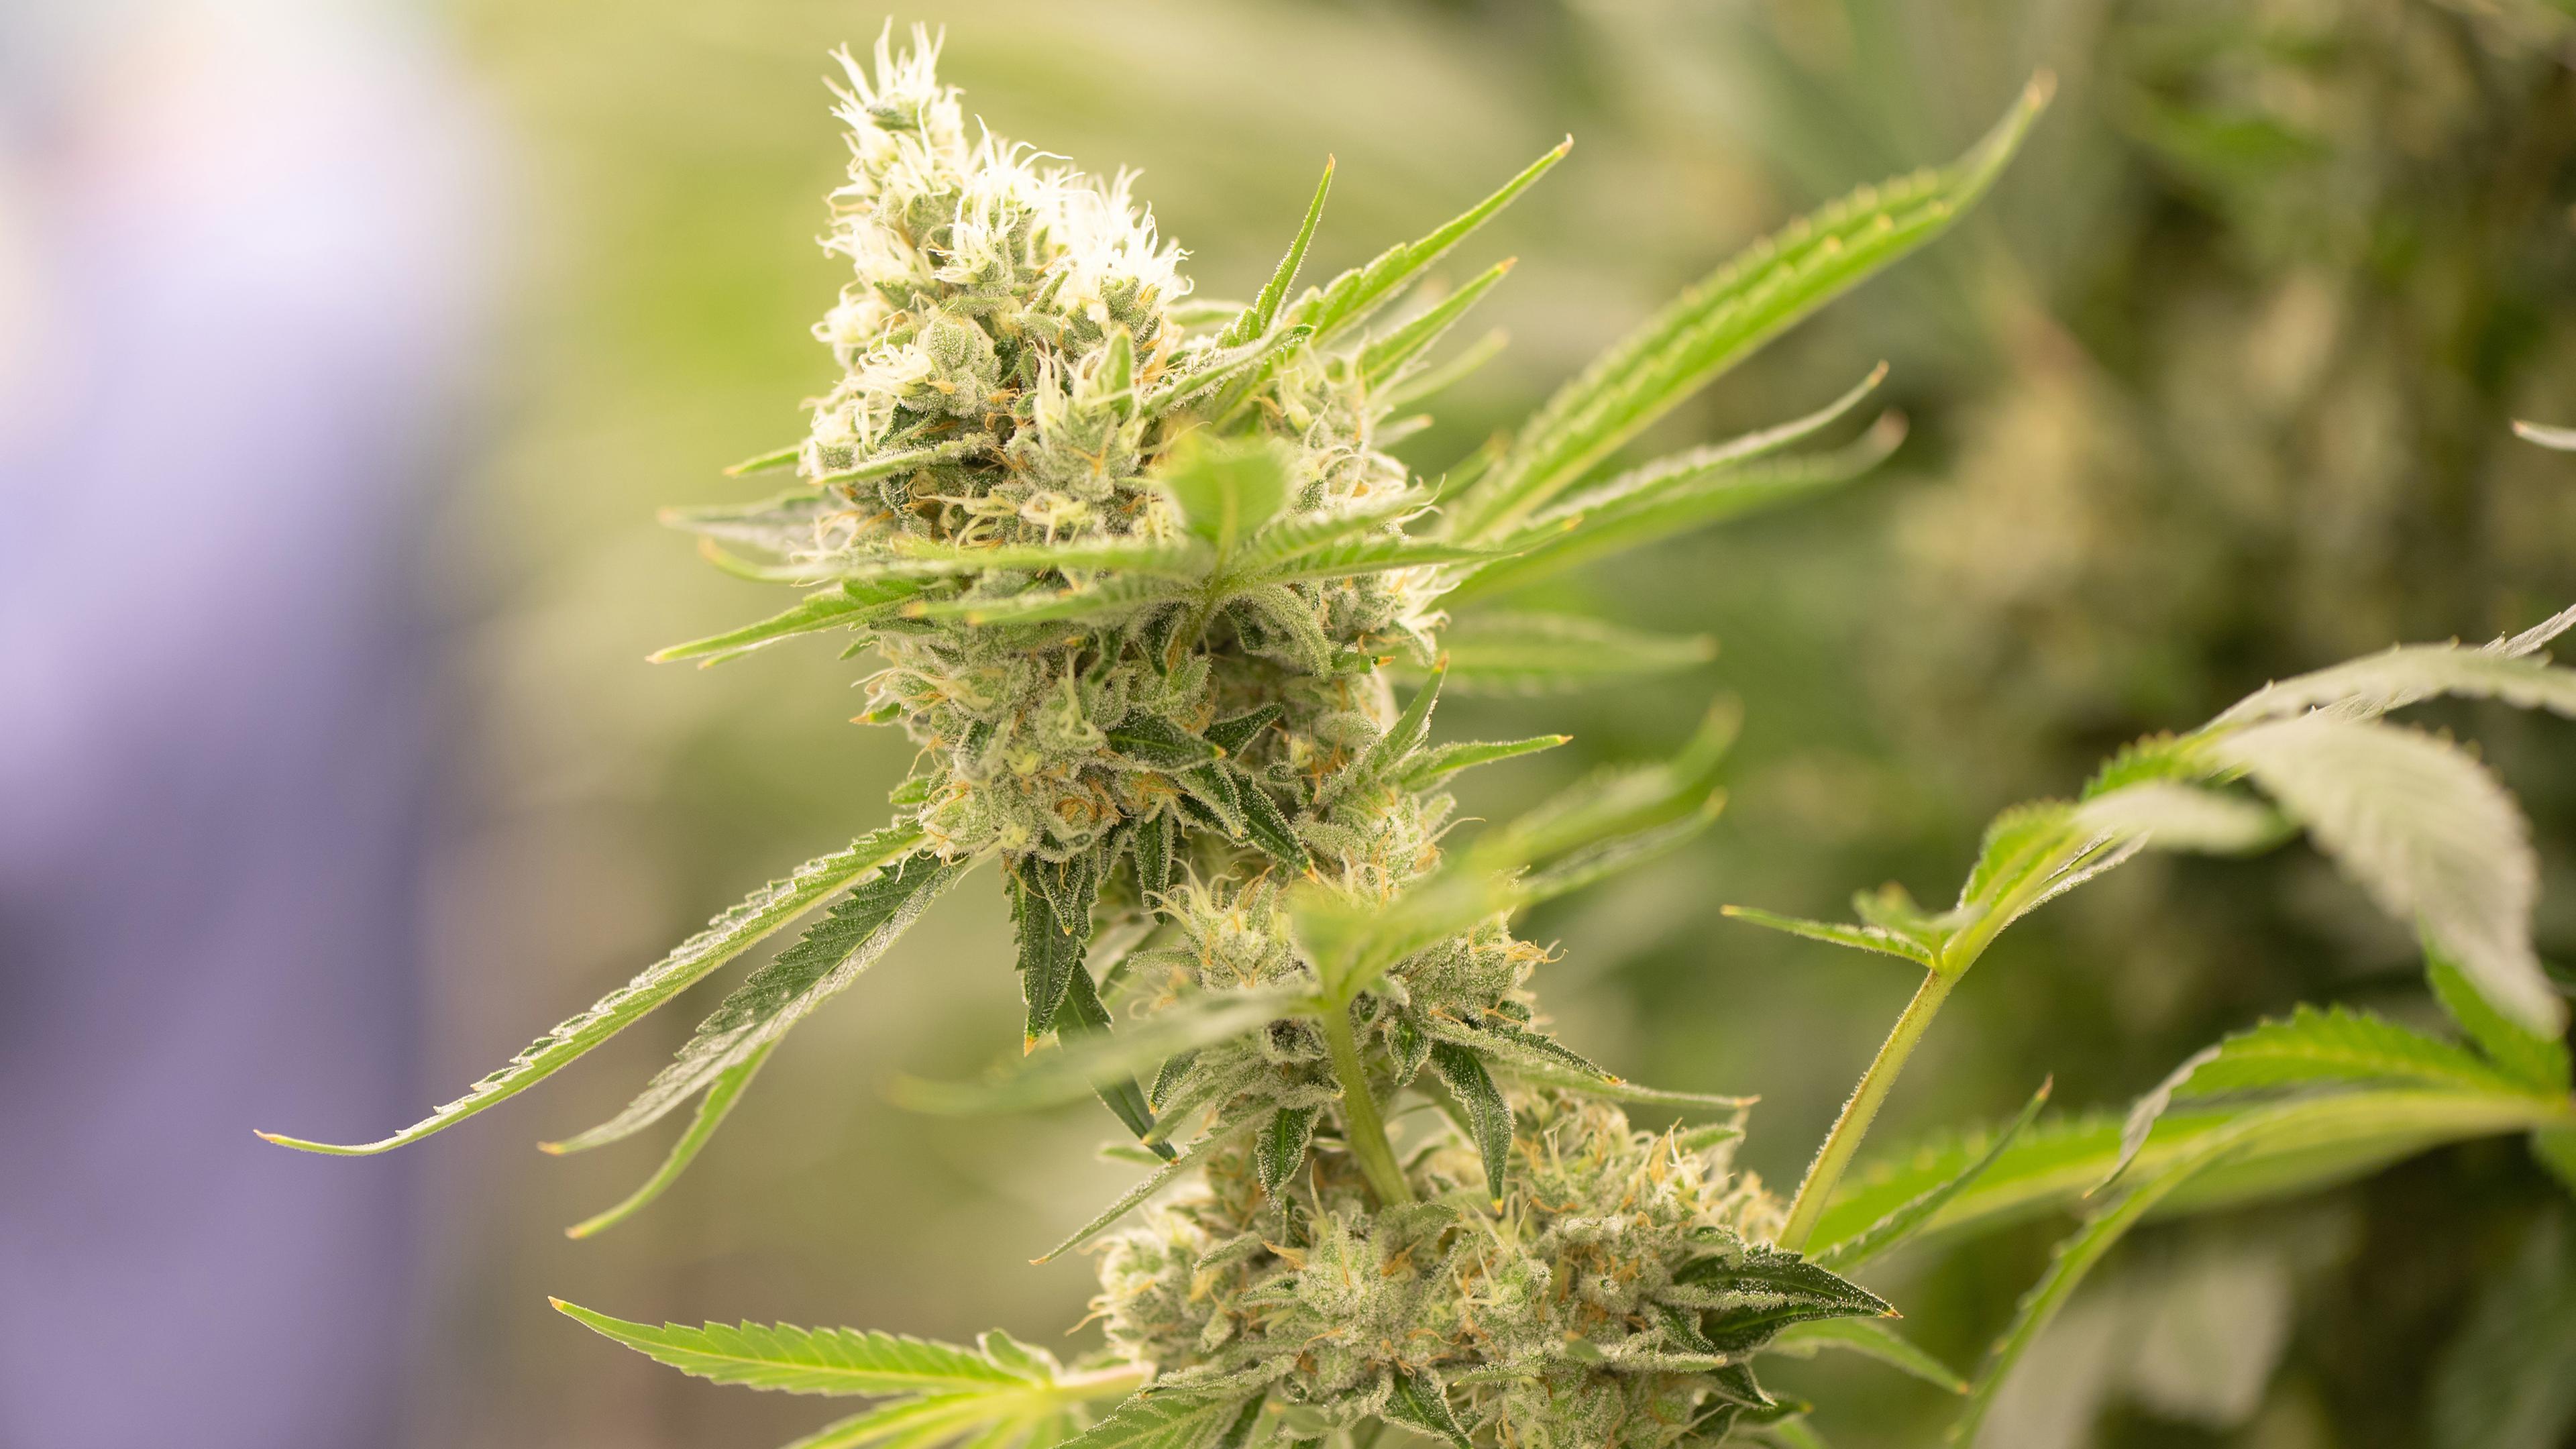 Cannabispflanzen wachsen in einem Blüteraum eines Pharmaunternehmen, aufgenommen am 15.03.2022